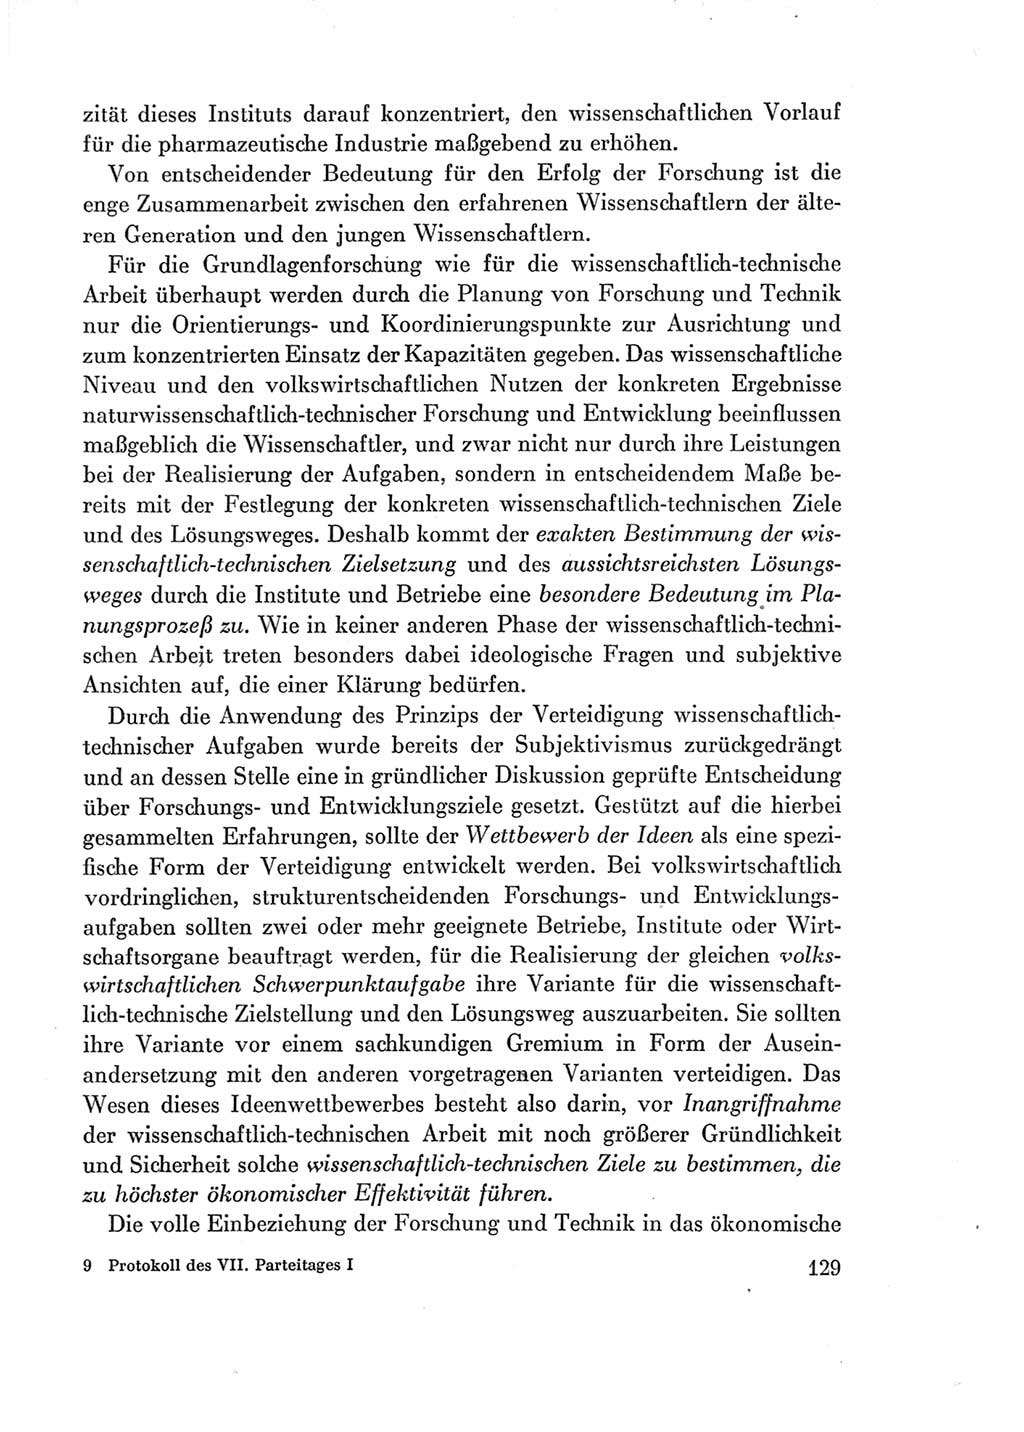 Protokoll der Verhandlungen des Ⅶ. Parteitages der Sozialistischen Einheitspartei Deutschlands (SED) [Deutsche Demokratische Republik (DDR)] 1967, Band Ⅰ, Seite 129 (Prot. Verh. Ⅶ. PT SED DDR 1967, Bd. Ⅰ, S. 129)